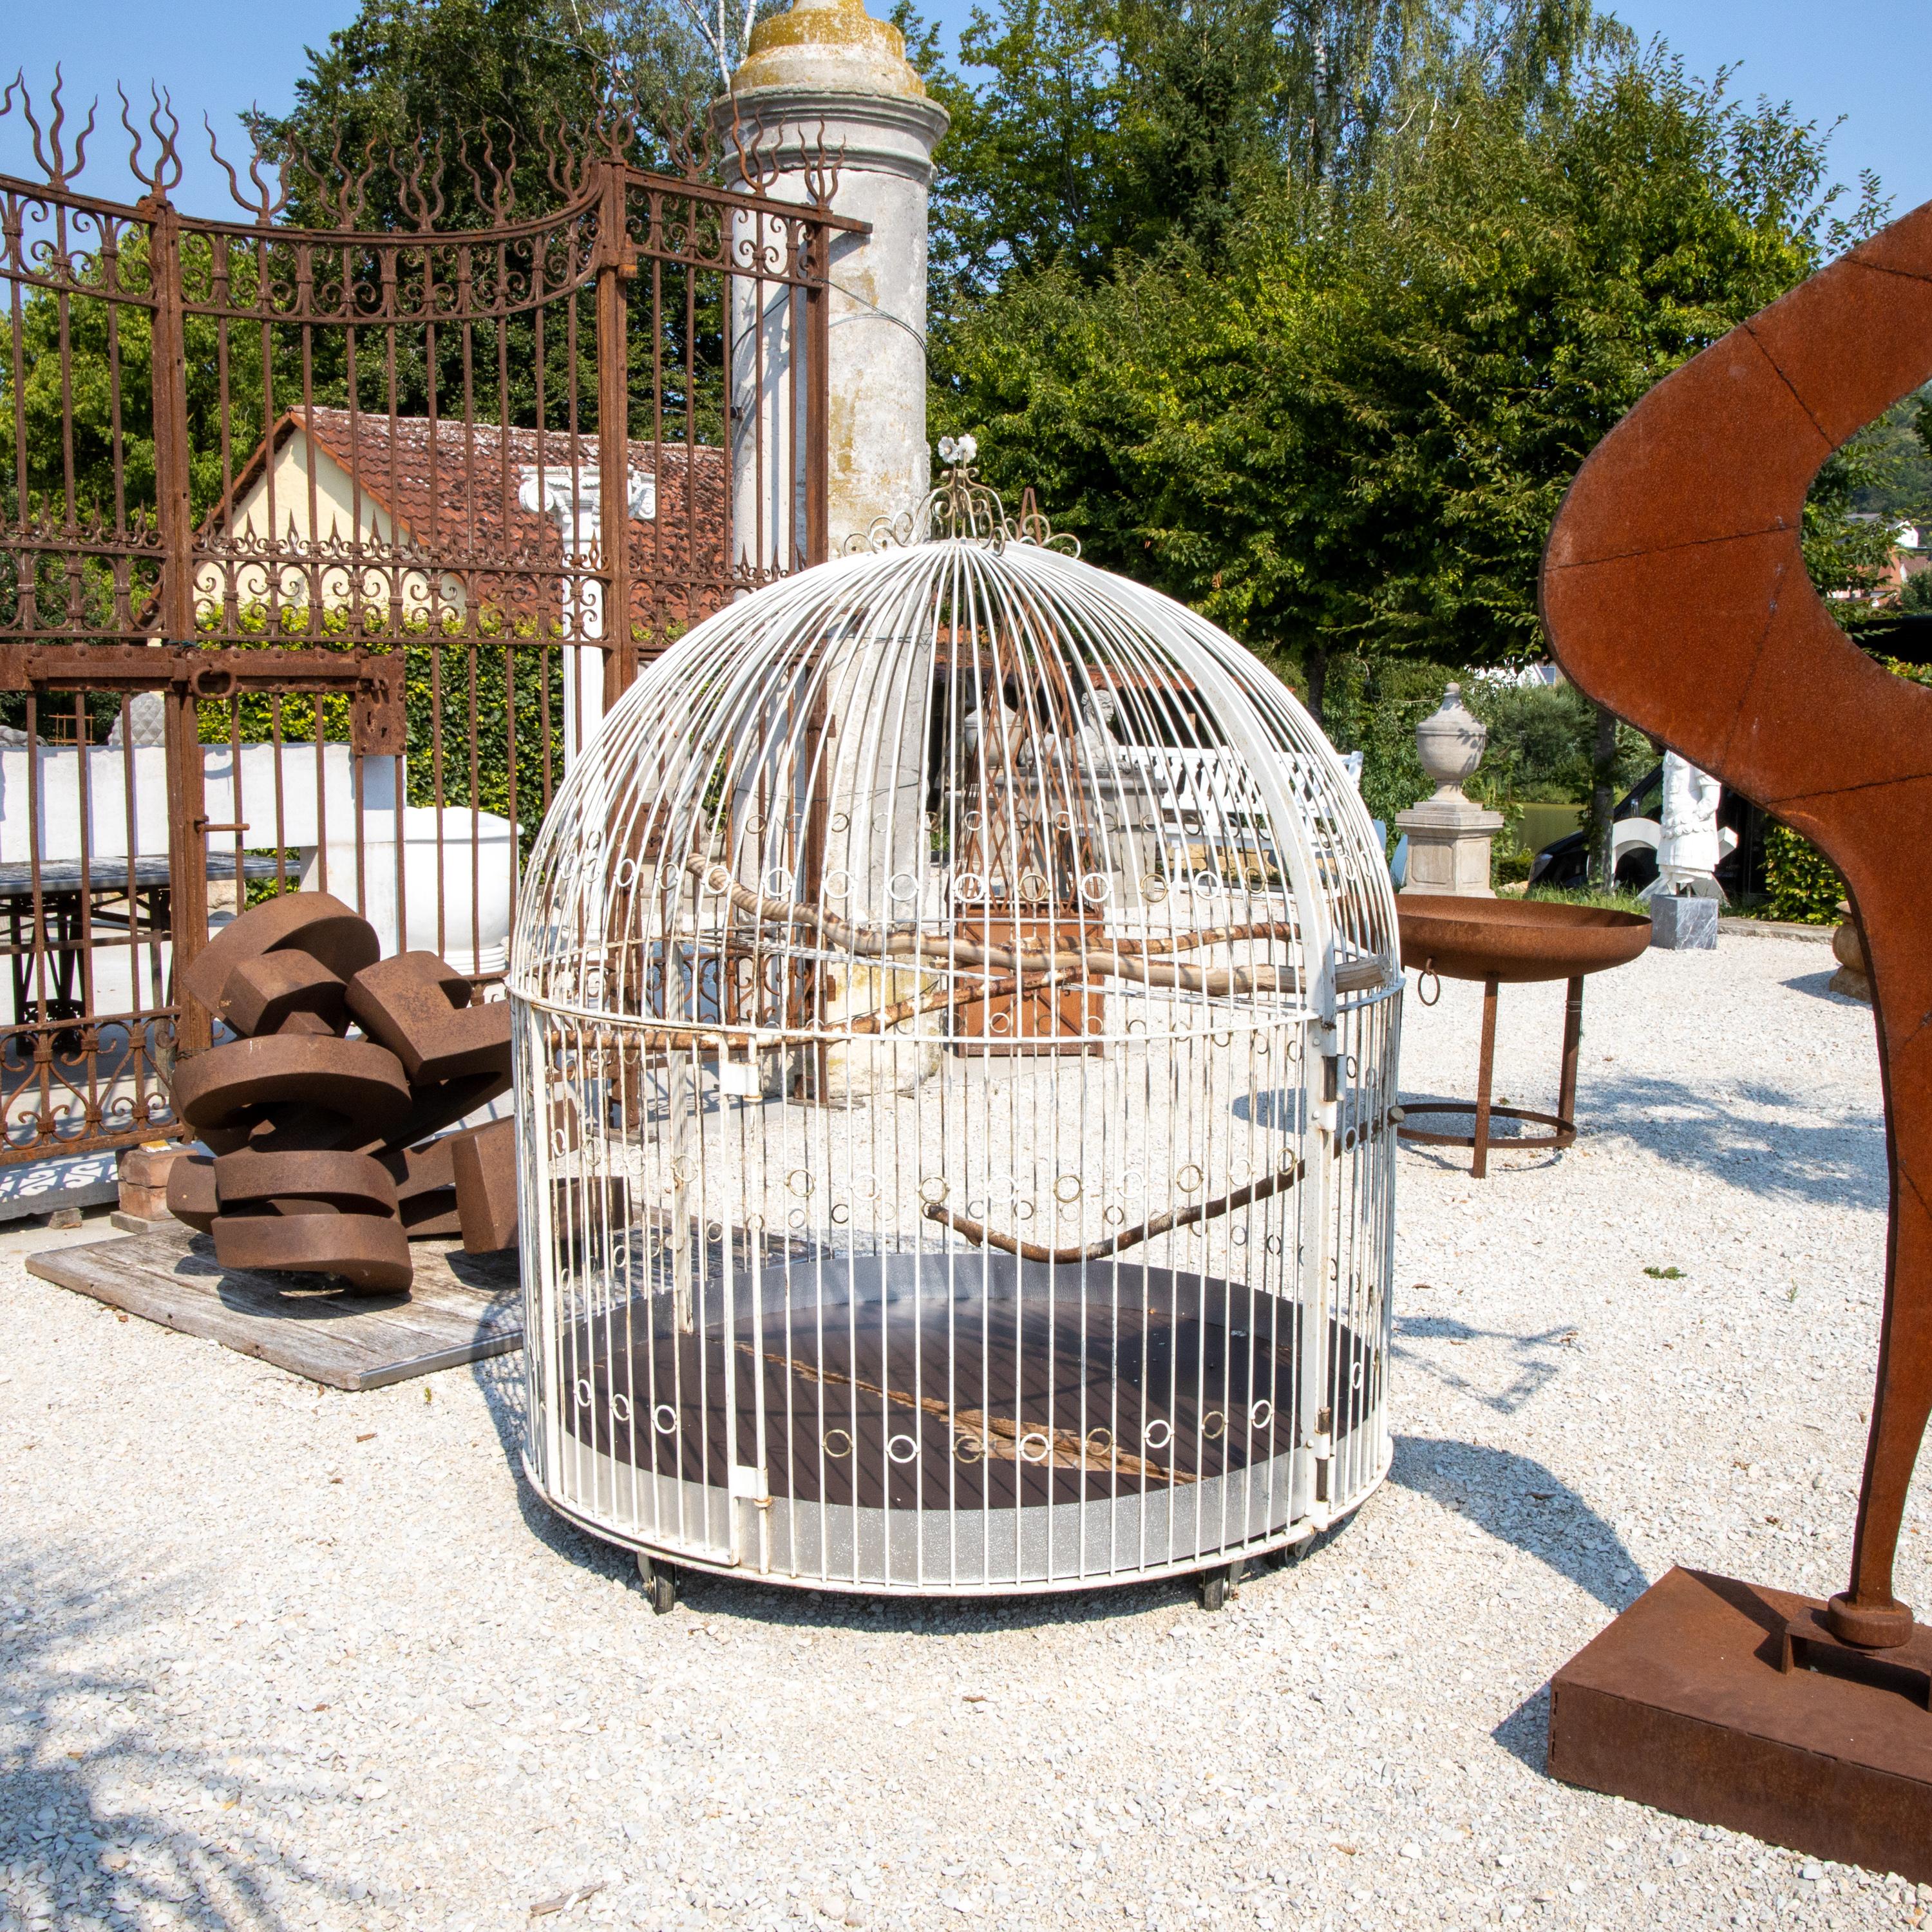 Großer Vogelkäfig oder Voliere aus weiß gestrichenen Eisenstäben mit Ringelementen und krönendem Blumendekor. Der Käfig steht auf Rädern und kann in der Mitte geteilt werden.
   